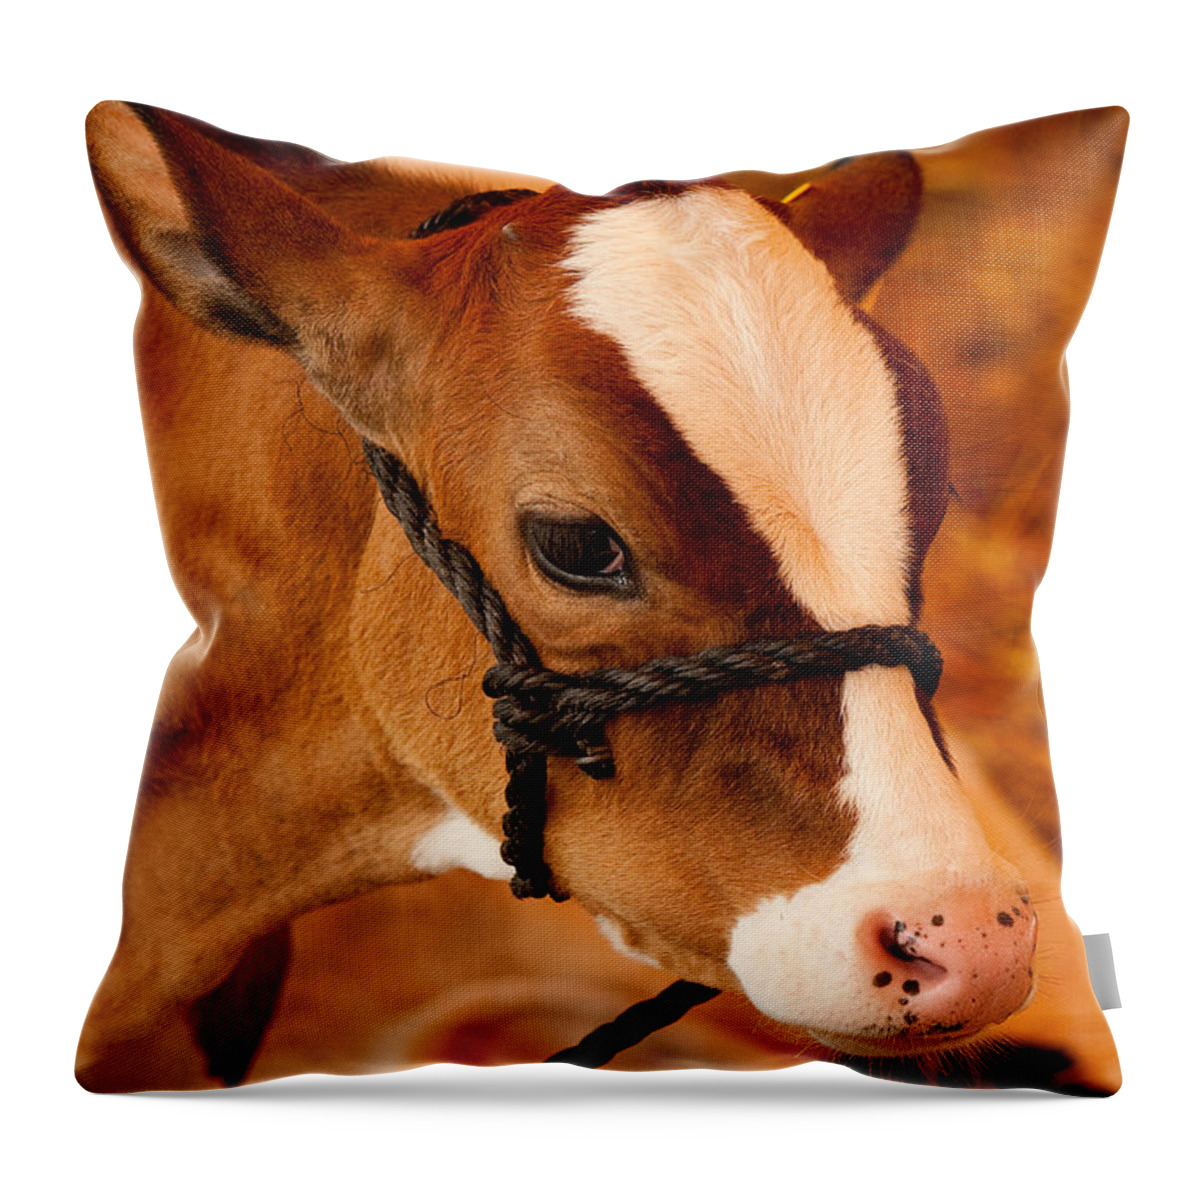 Calf Throw Pillow featuring the photograph Adorable Calf by Kristia Adams